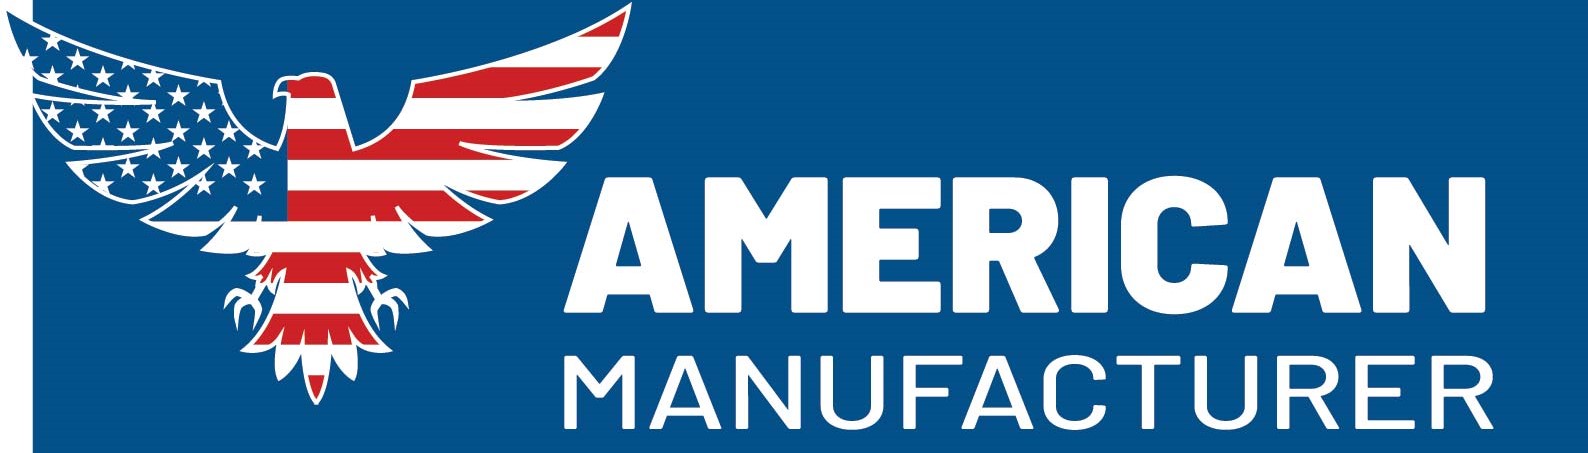 American Manufacturer eagle banner